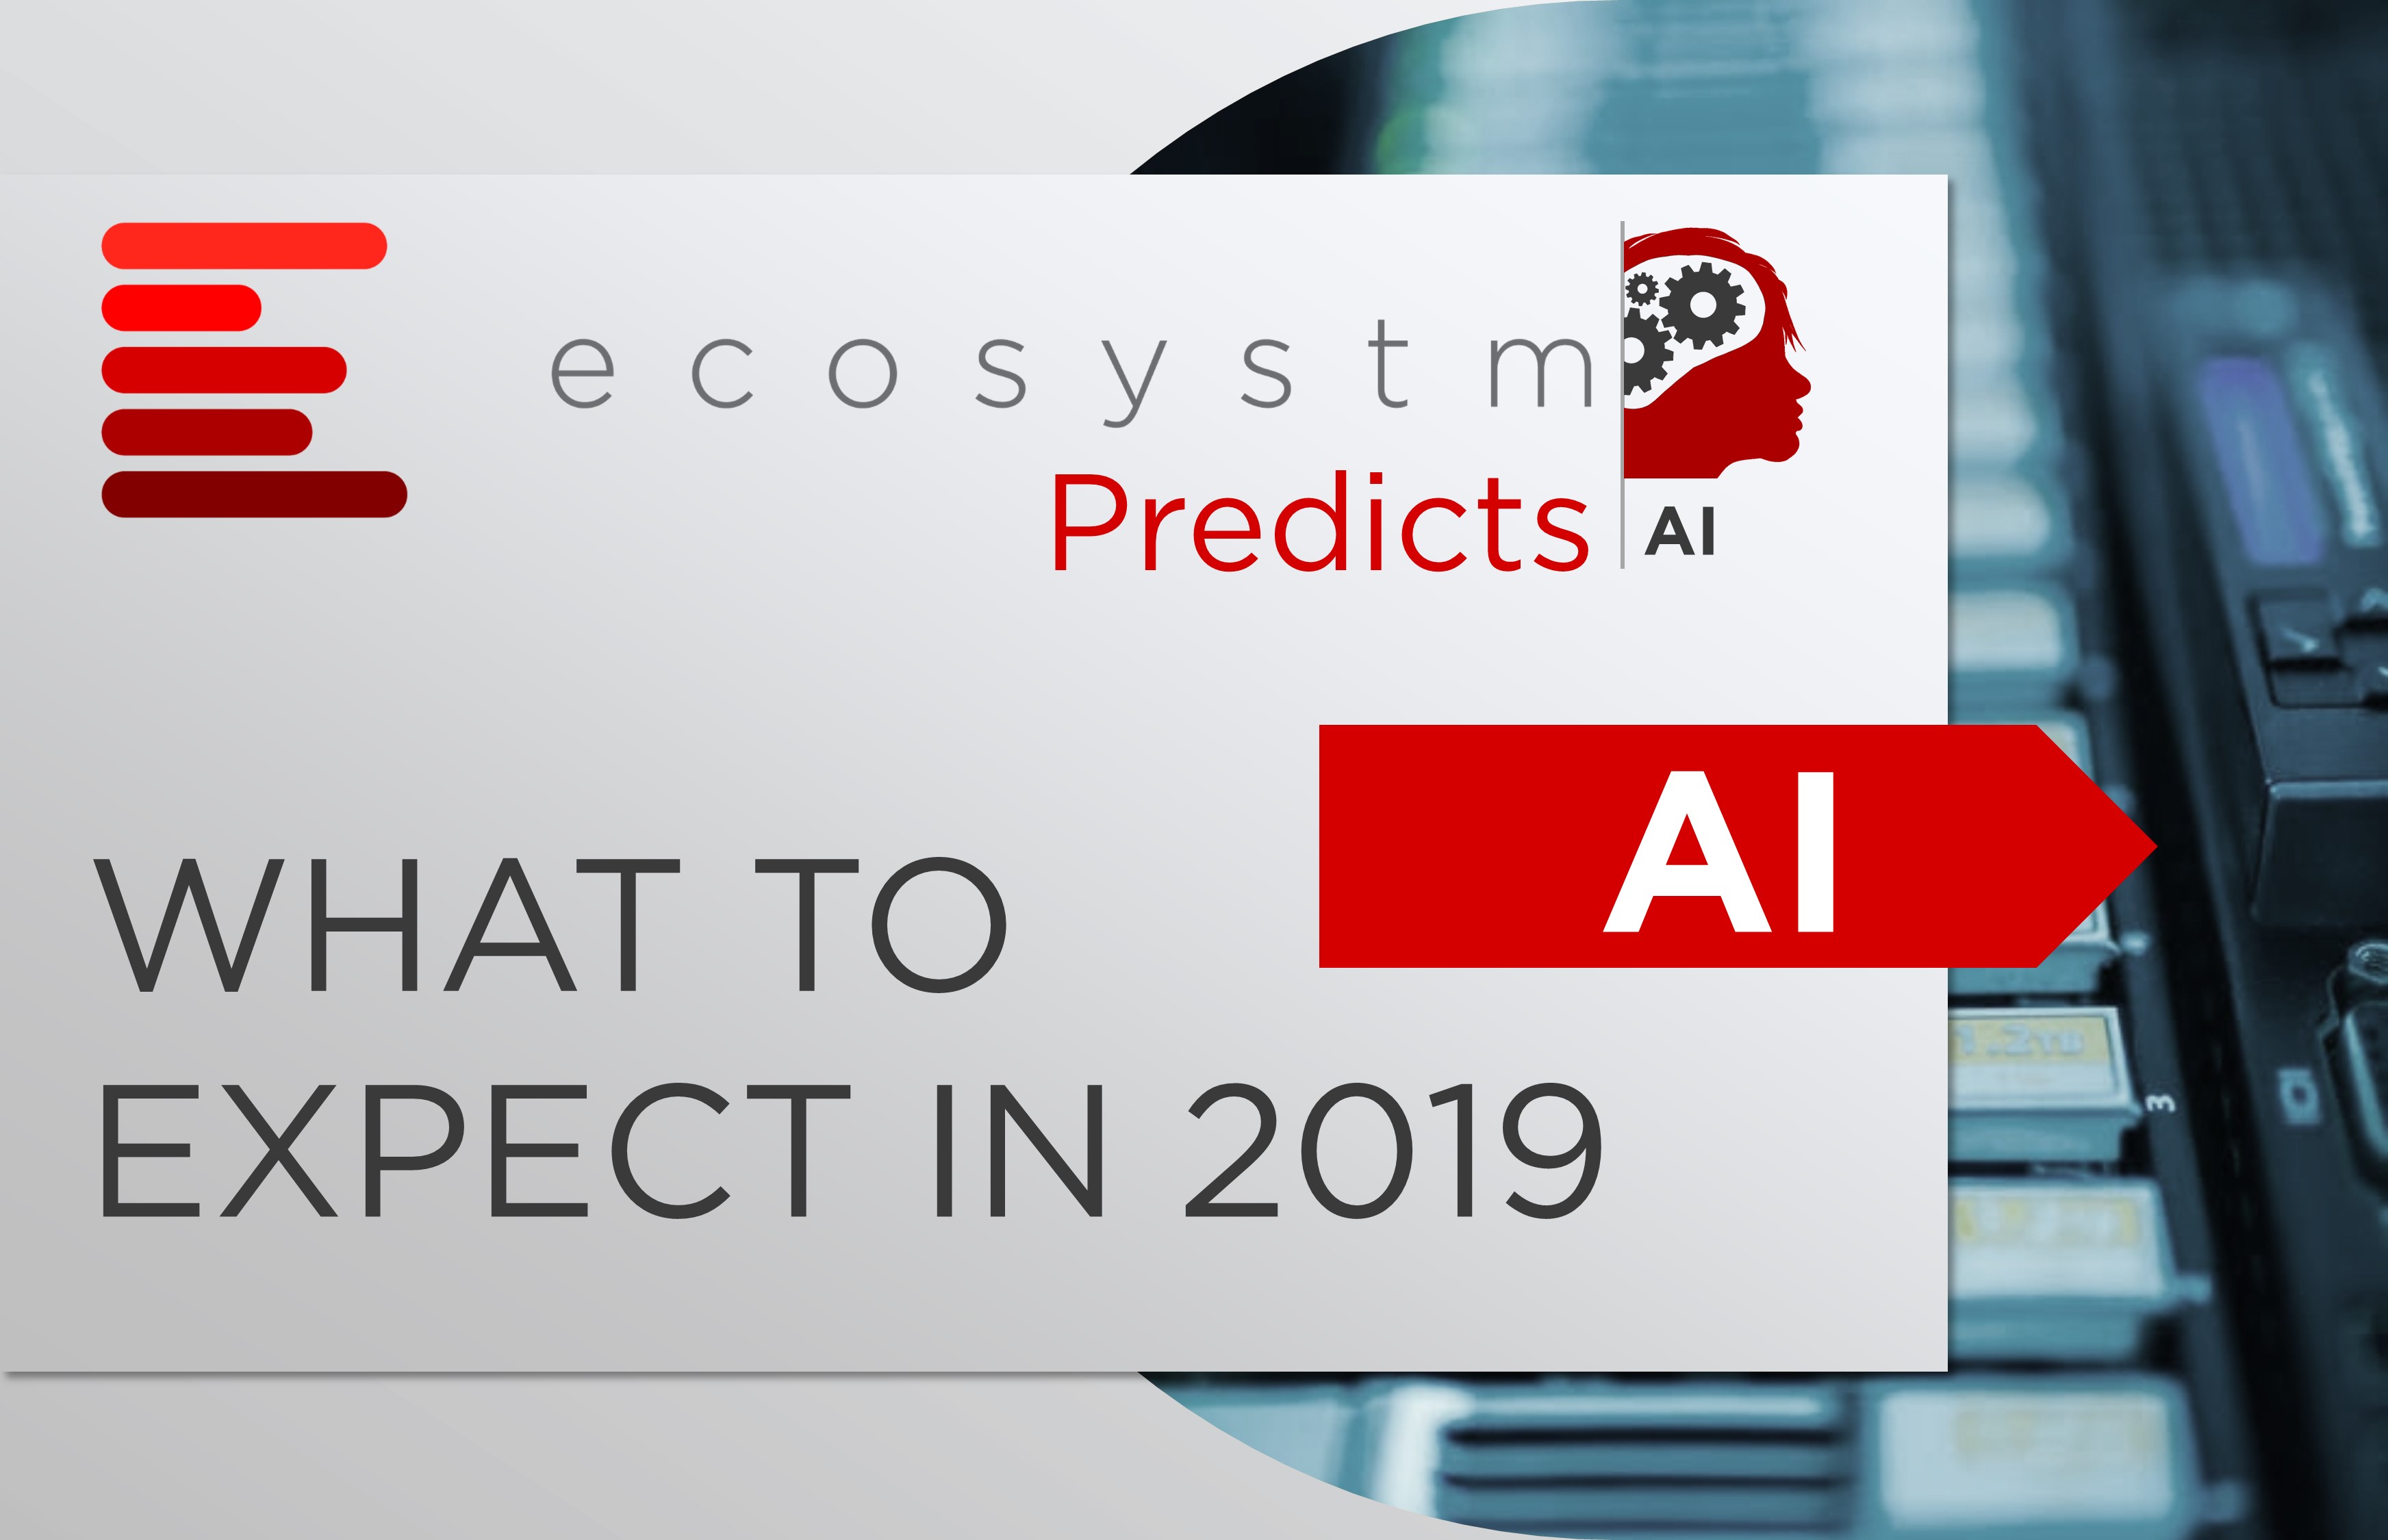 Ecosystm Predicts AI